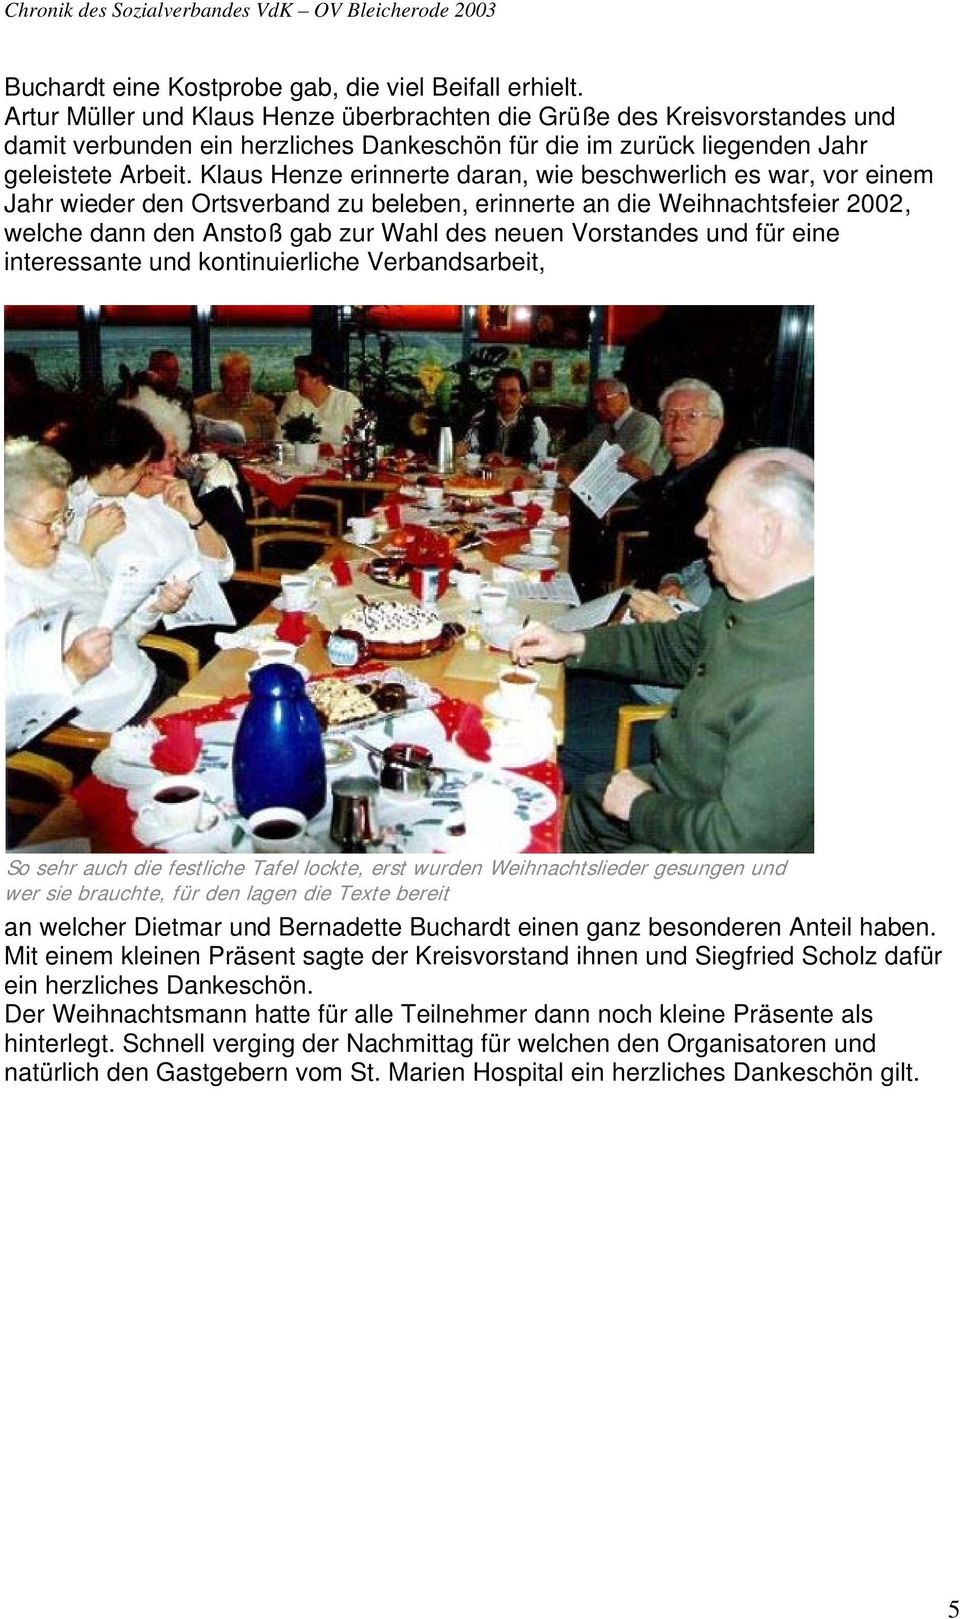 Klaus Henze erinnerte daran, wie beschwerlich es war, vor einem Jahr wieder den Ortsverband zu beleben, erinnerte an die Weihnachtsfeier 2002, welche dann den Anstoß gab zur Wahl des neuen Vorstandes